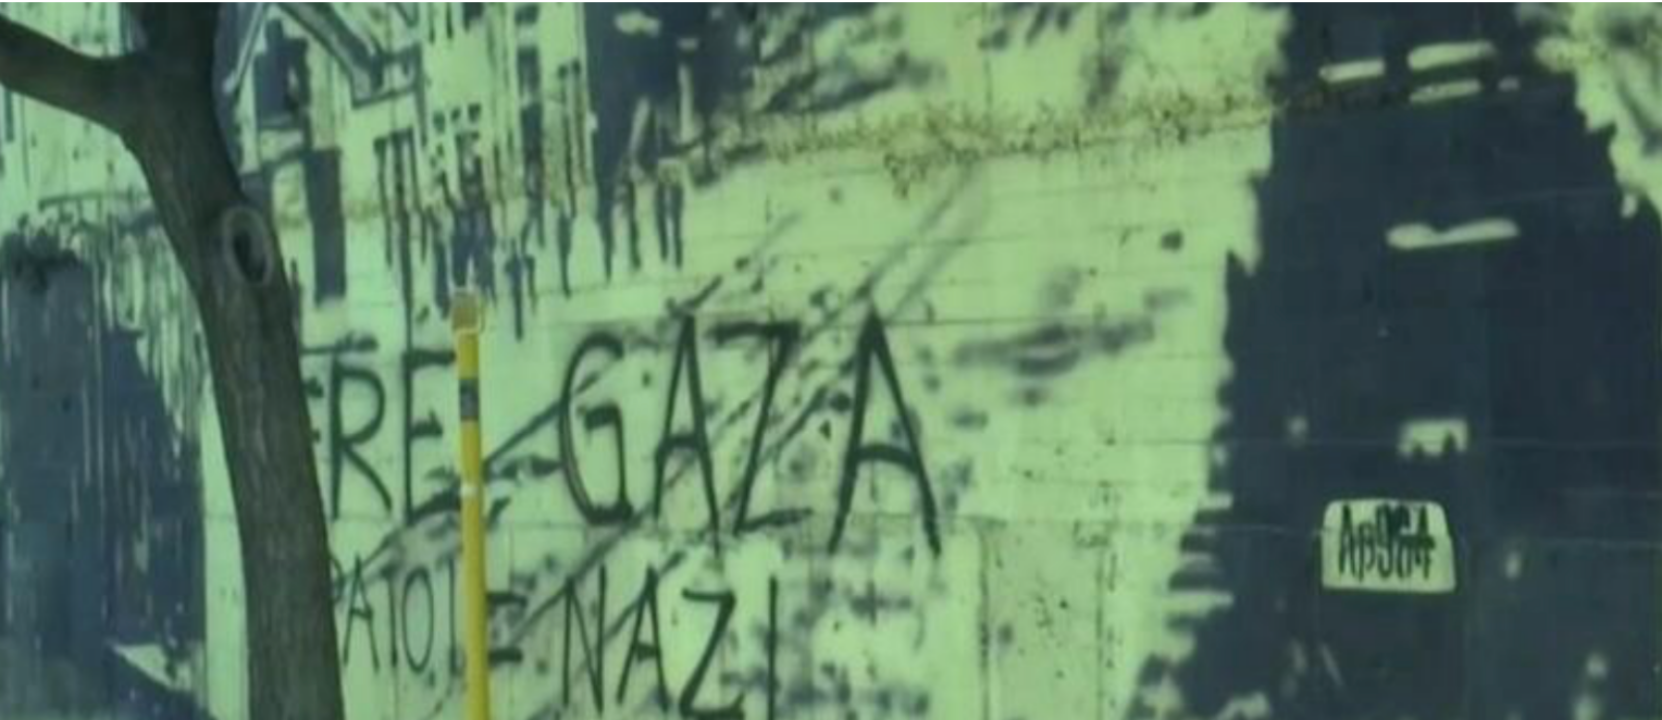 Θεσσαλονίκη: Βανδάλισαν τοιχογραφία για τα θύματα του Ολοκαυτώματος